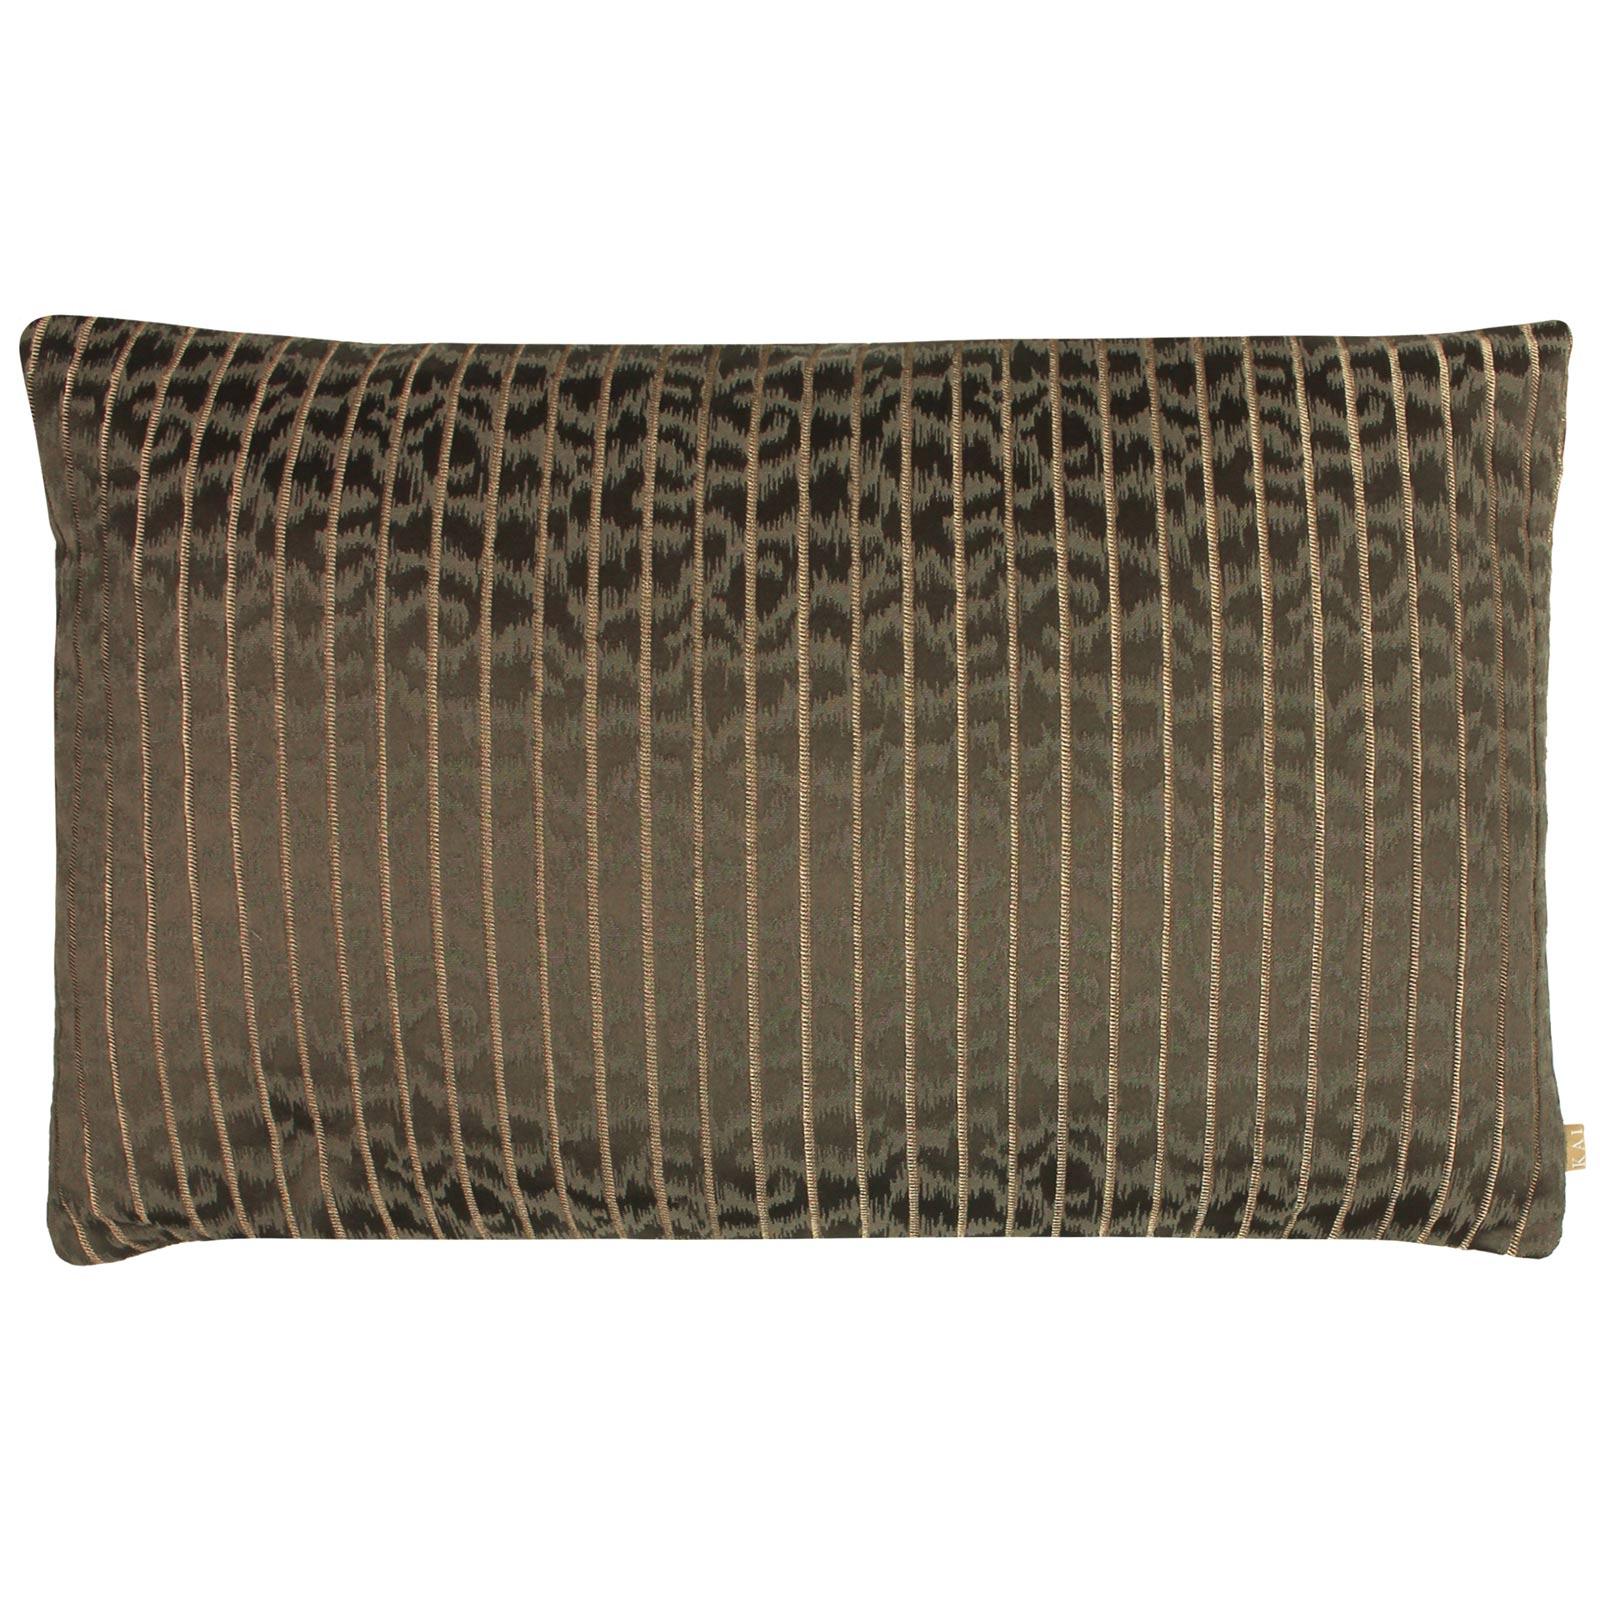 Kai Wrap Caracal Earth Animal Print Filled Cushions 40cm x 60cm (16